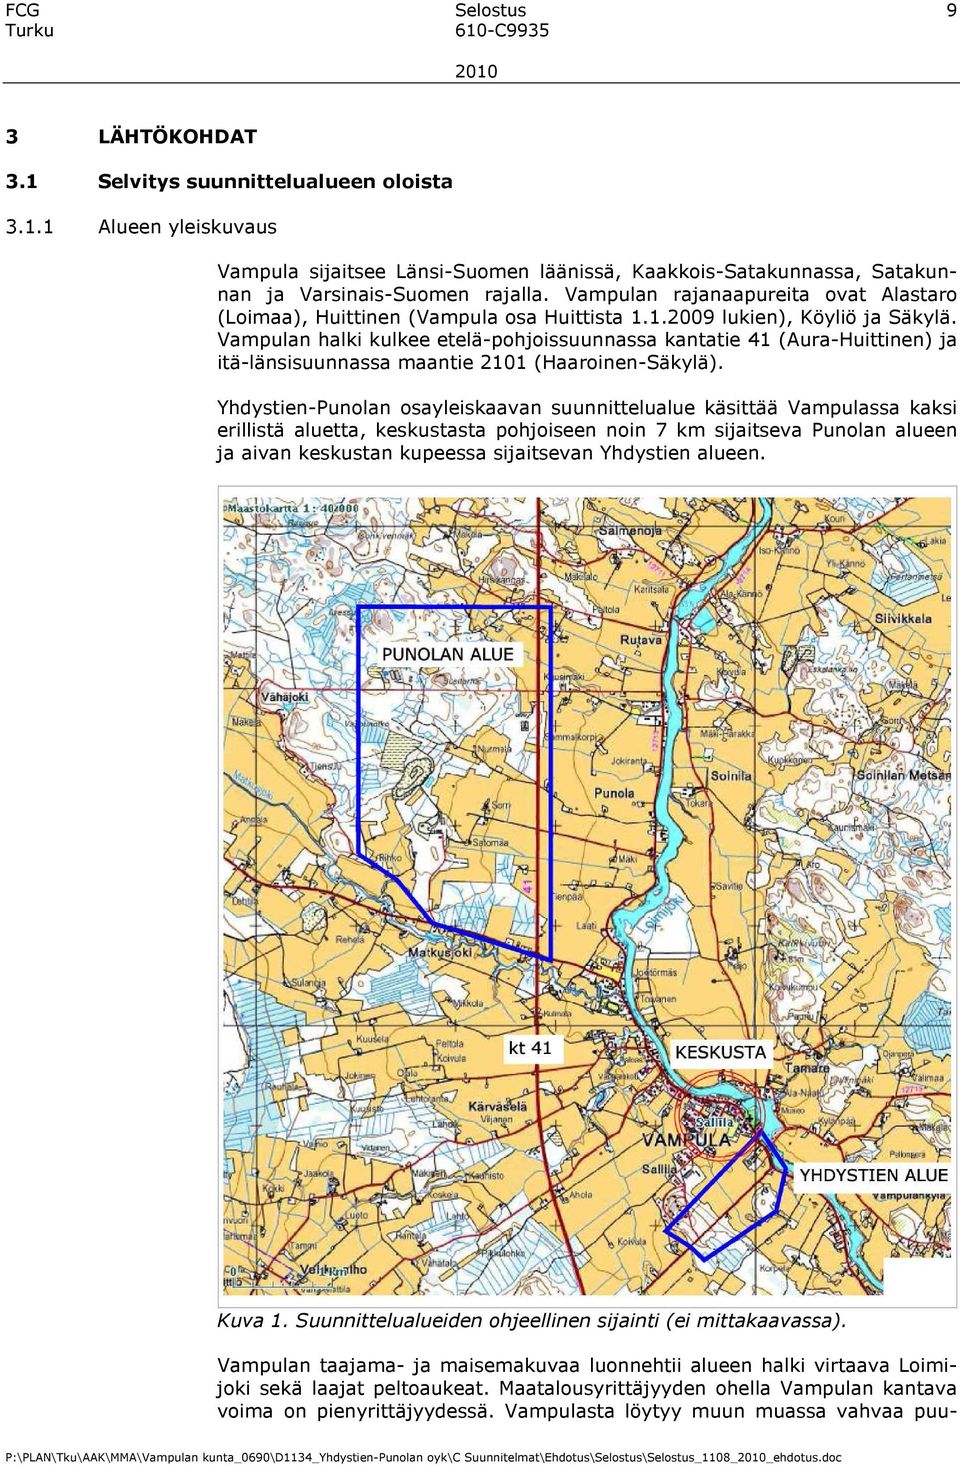 Vampulan halki kulkee etelä-pohjoissuunnassa kantatie 41 (Aura-Huittinen) ja itä-länsisuunnassa maantie 2101 (Haaroinen-Säkylä).